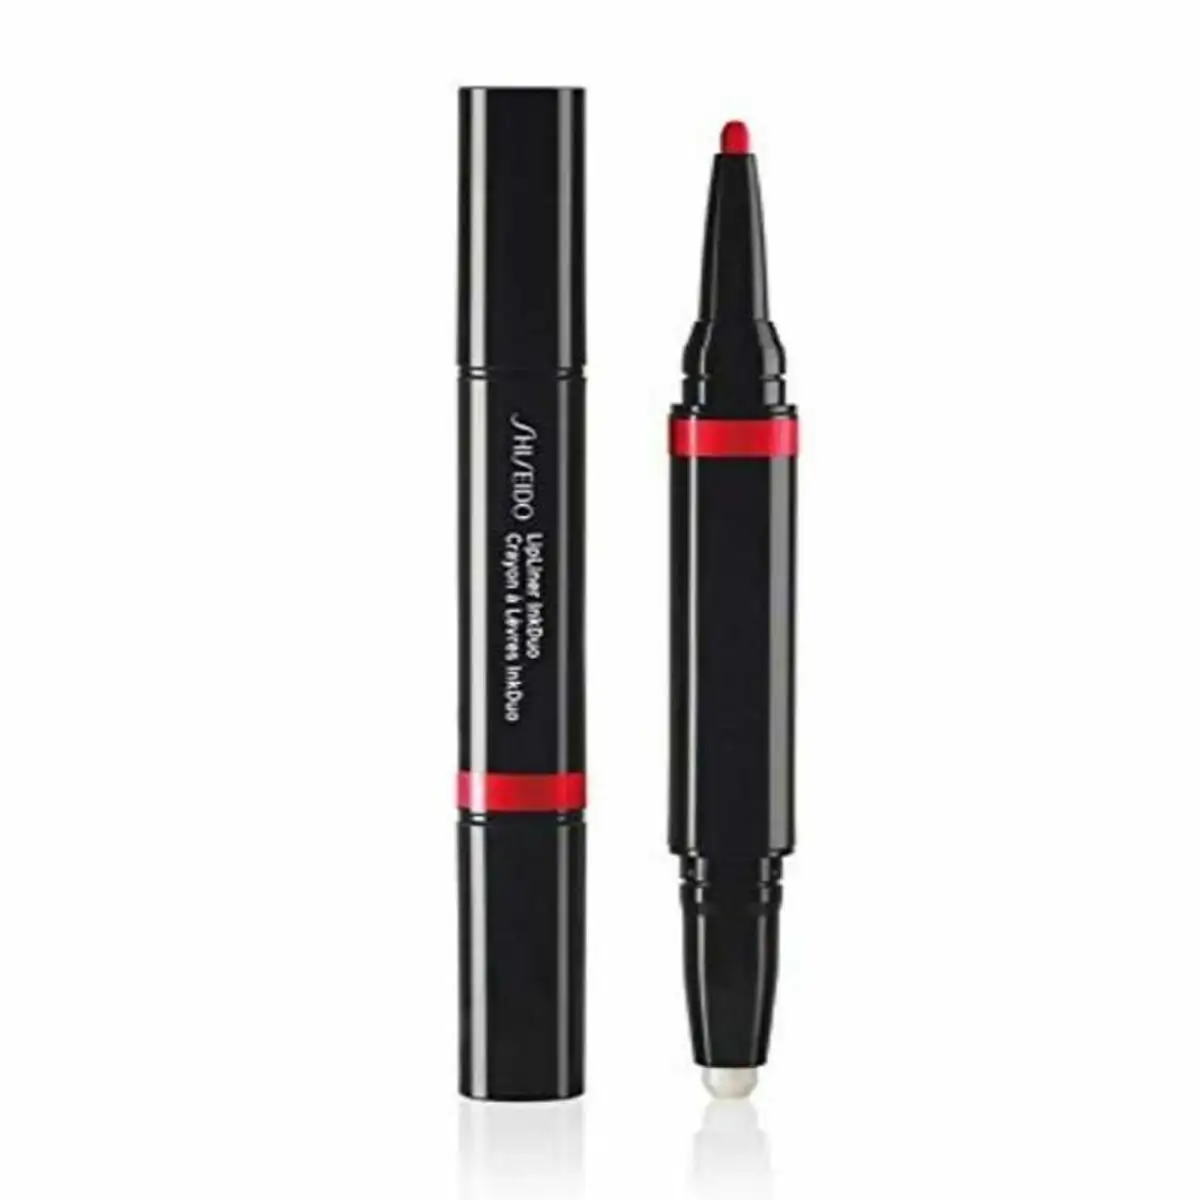 Crayon a levres lipliner ink duo shiseido 1 1 g _1887. Bienvenue sur DIAYTAR SENEGAL - Où Chaque Produit a son Histoire. Découvrez notre sélection unique et choisissez des articles qui racontent la richesse culturelle et artistique du Sénégal.